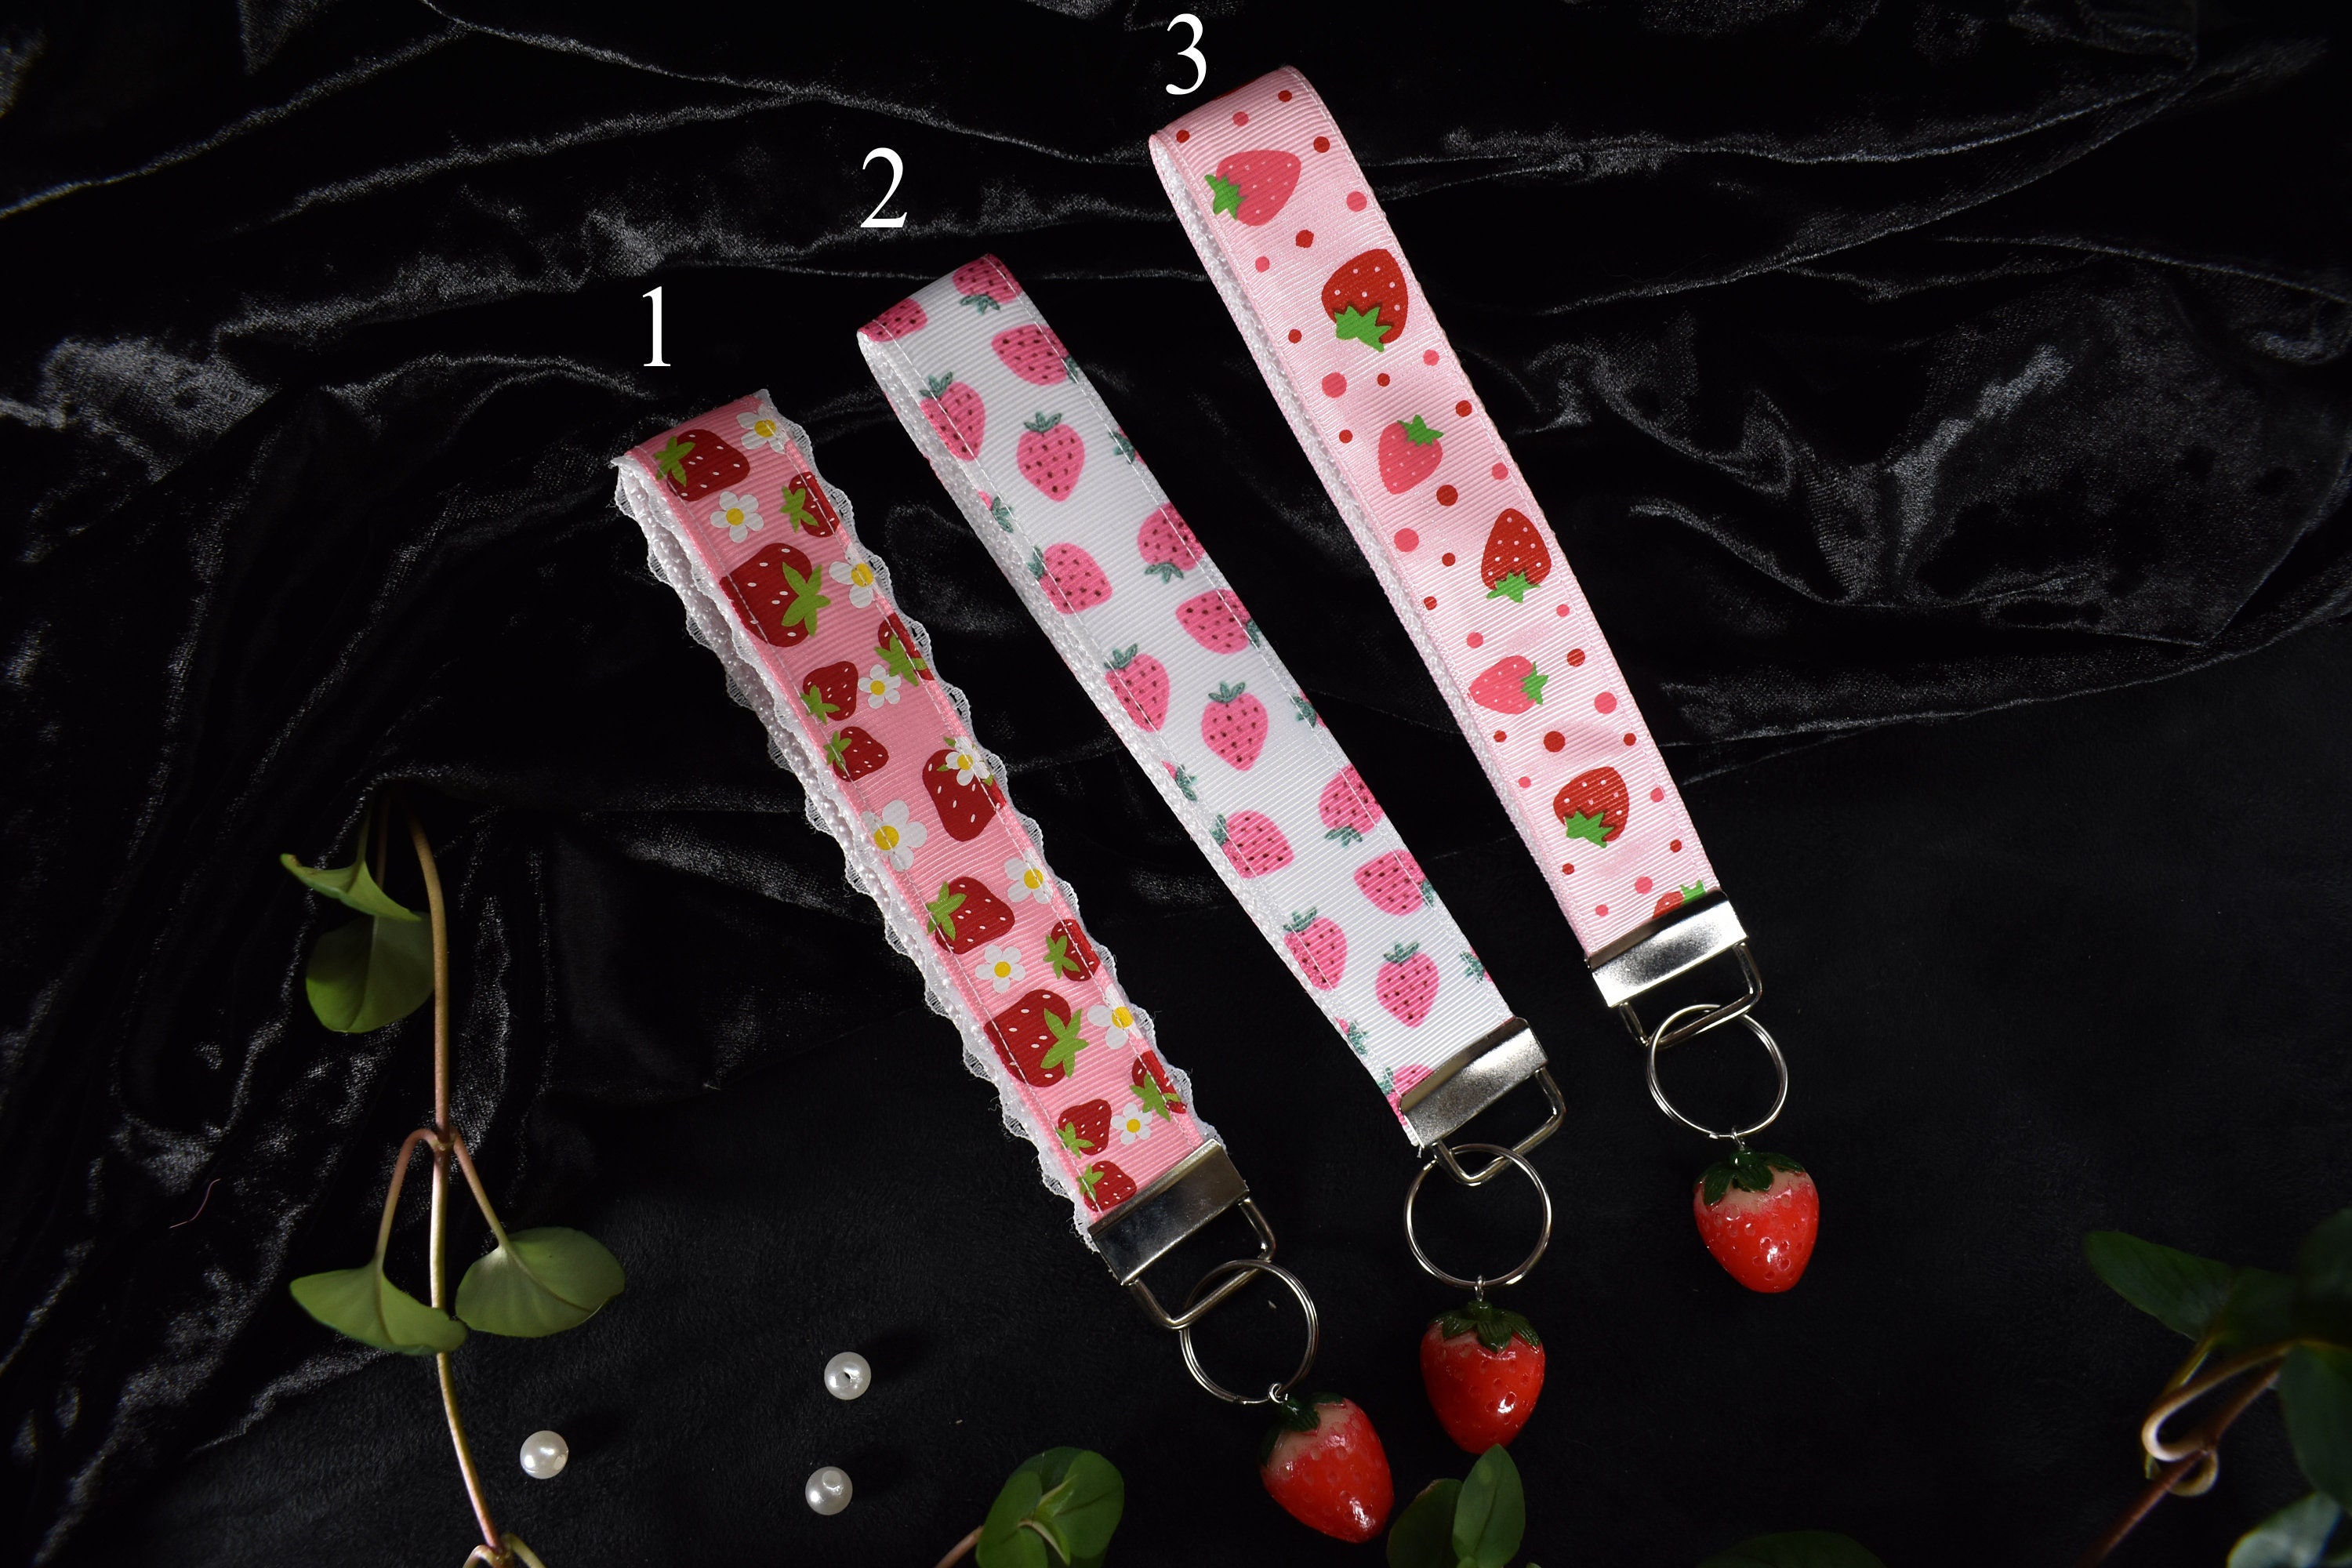 Strawberries keychains / Wrist key chain / witchy keychain / goth / altfashion / pick your style photo